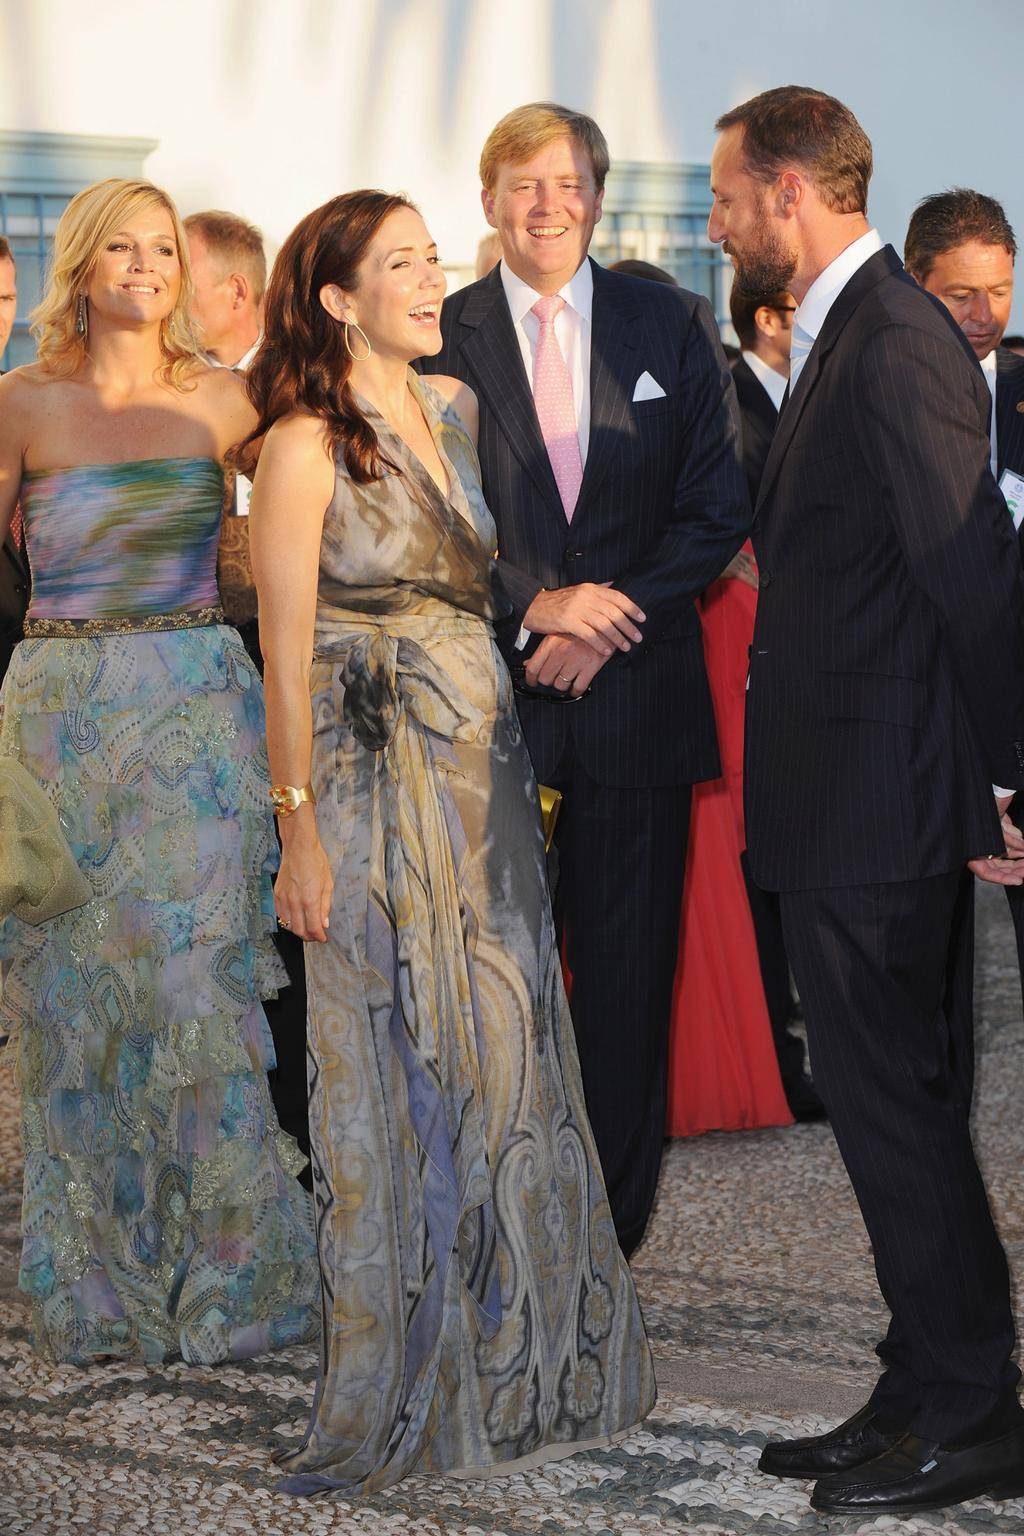 Maria, księżna koronna Danii, na ślubie Tatiany Blatnik i księcia greckiego Nikolaosa w katedrze św. Mikołaja na wyspie Spetses w Grecji, 25 sierpnia 2010 roku.